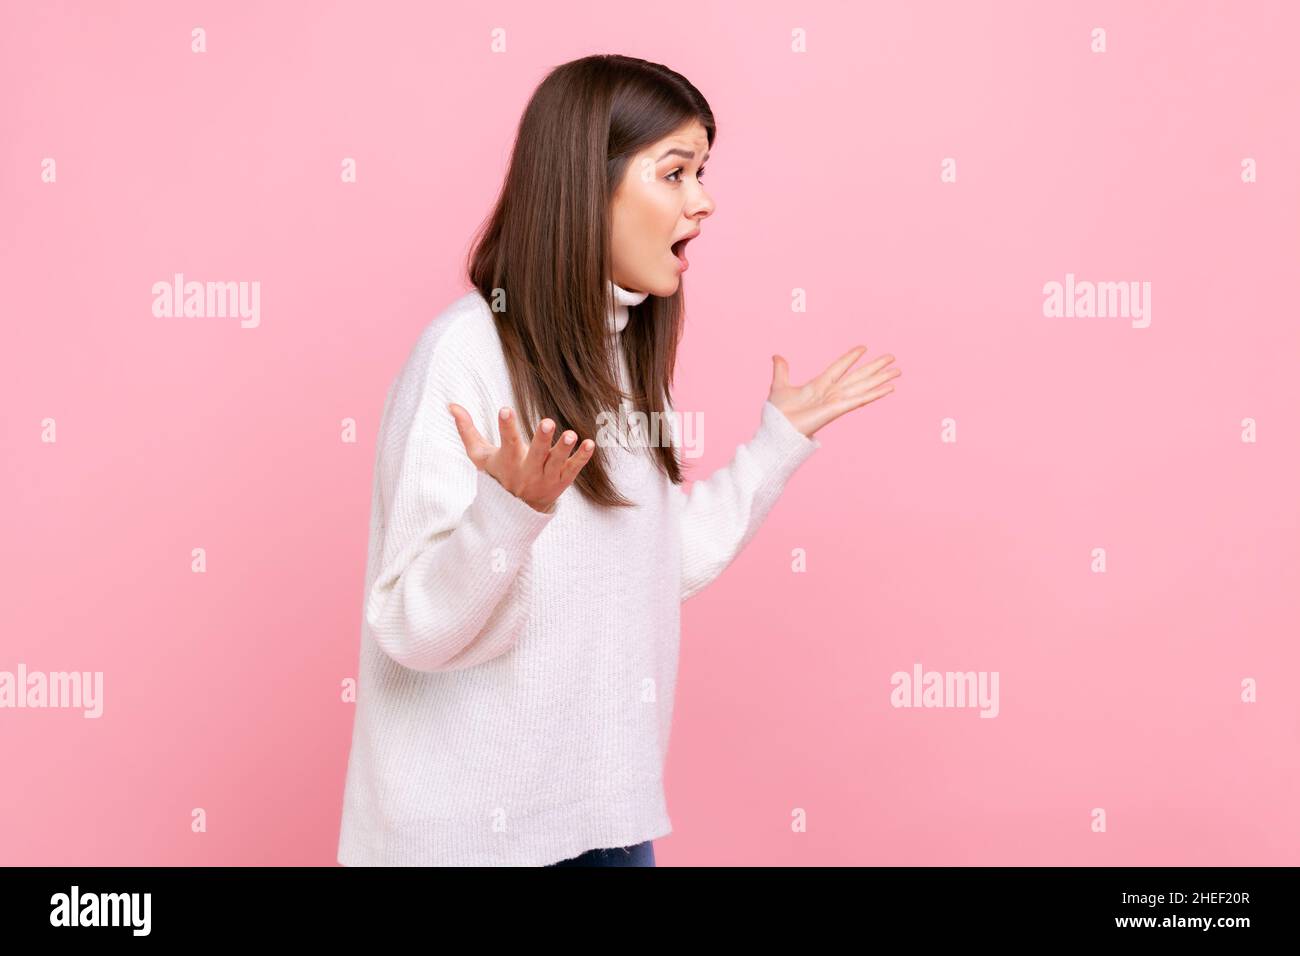 Portrait de la jeune fille tenant les mains dans un geste furieux fou, hurlant avec rage et colère, portant un pull blanc de style décontracté.Studio d'intérieur isolé sur fond rose. Banque D'Images